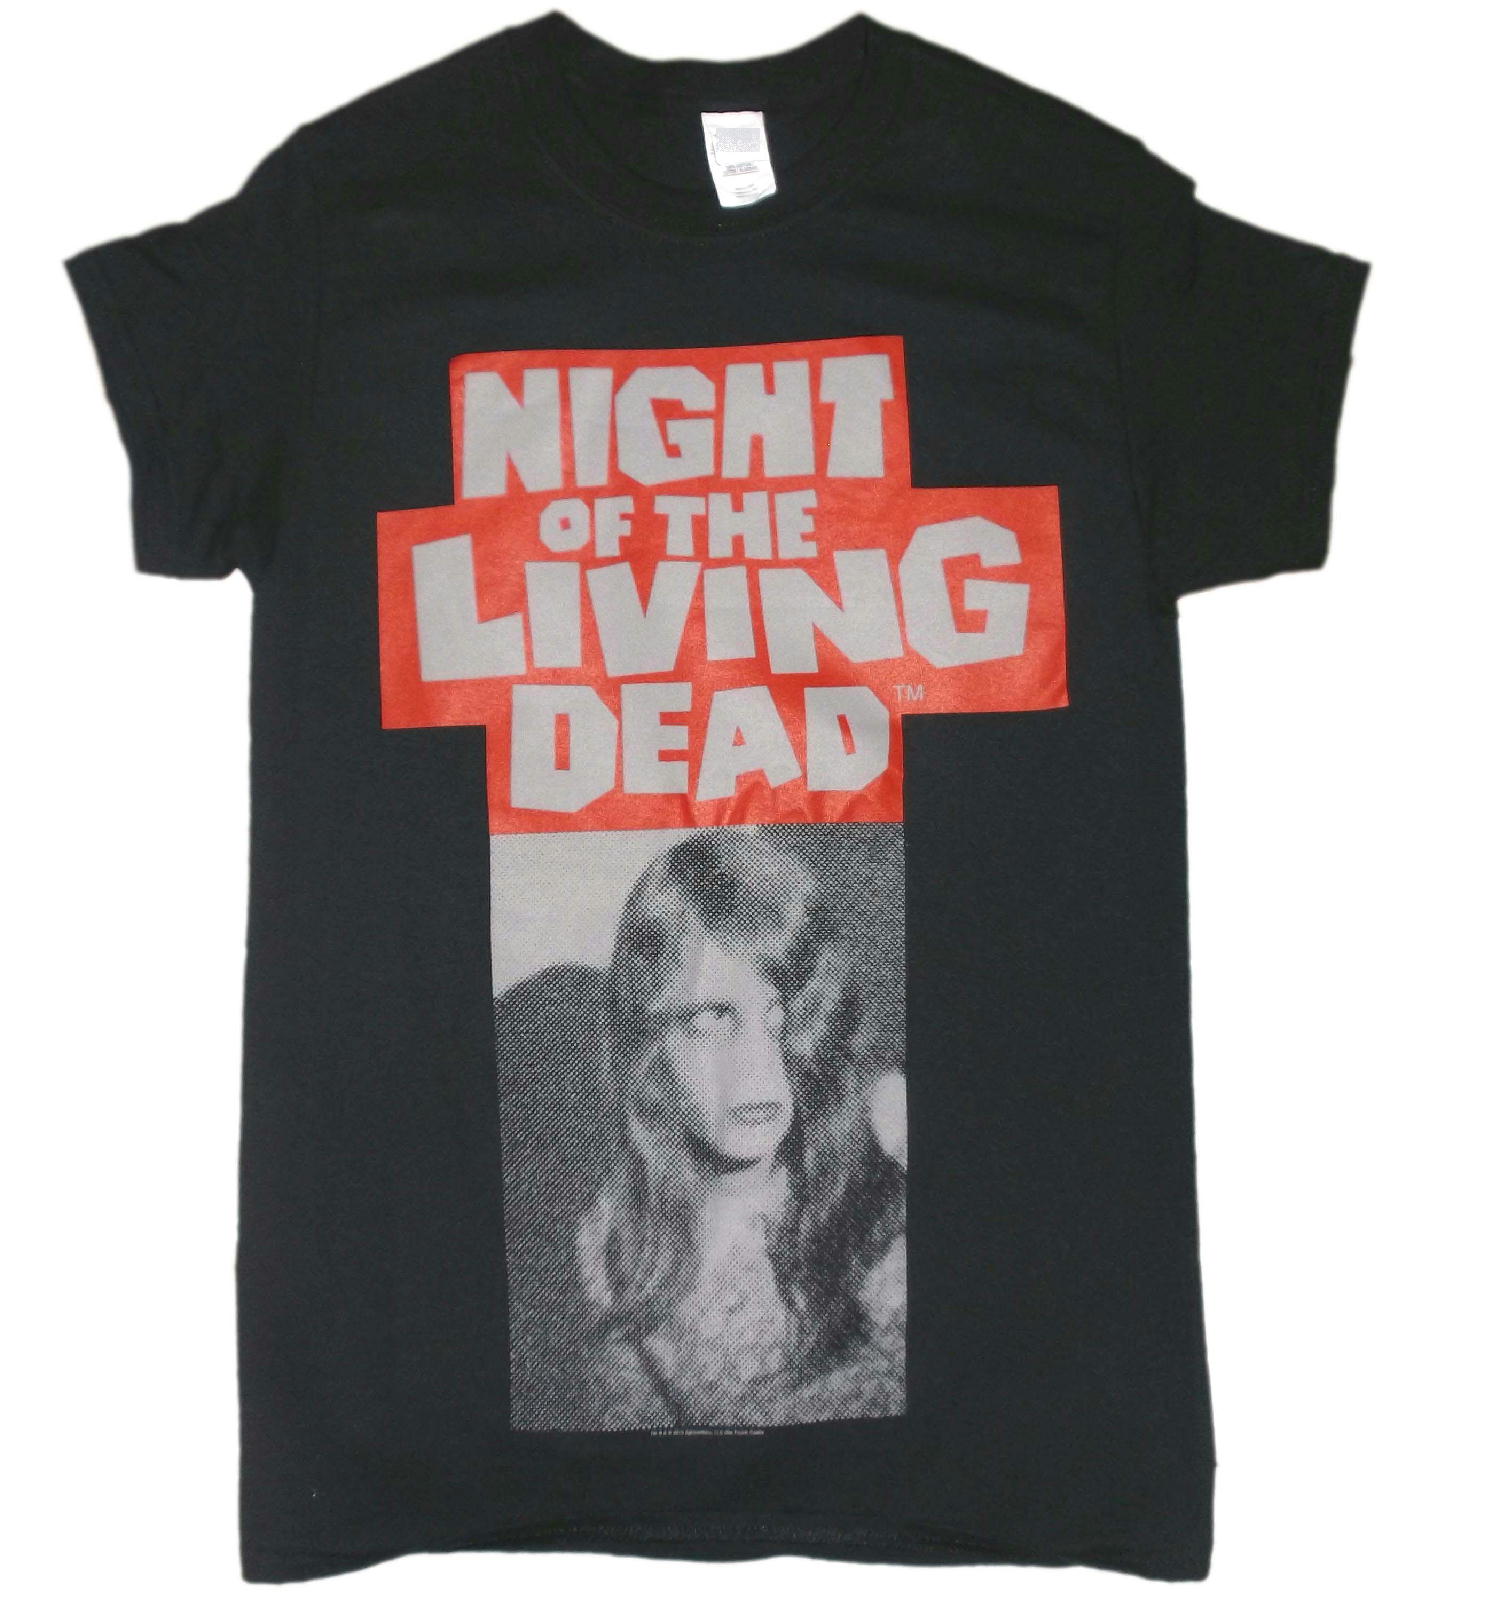 バンドTシャツ 通販 ナイト オブ ザ リビング デッド Night Of The Living Dead Tシャツ 公式 ゾンビ ホラー映画